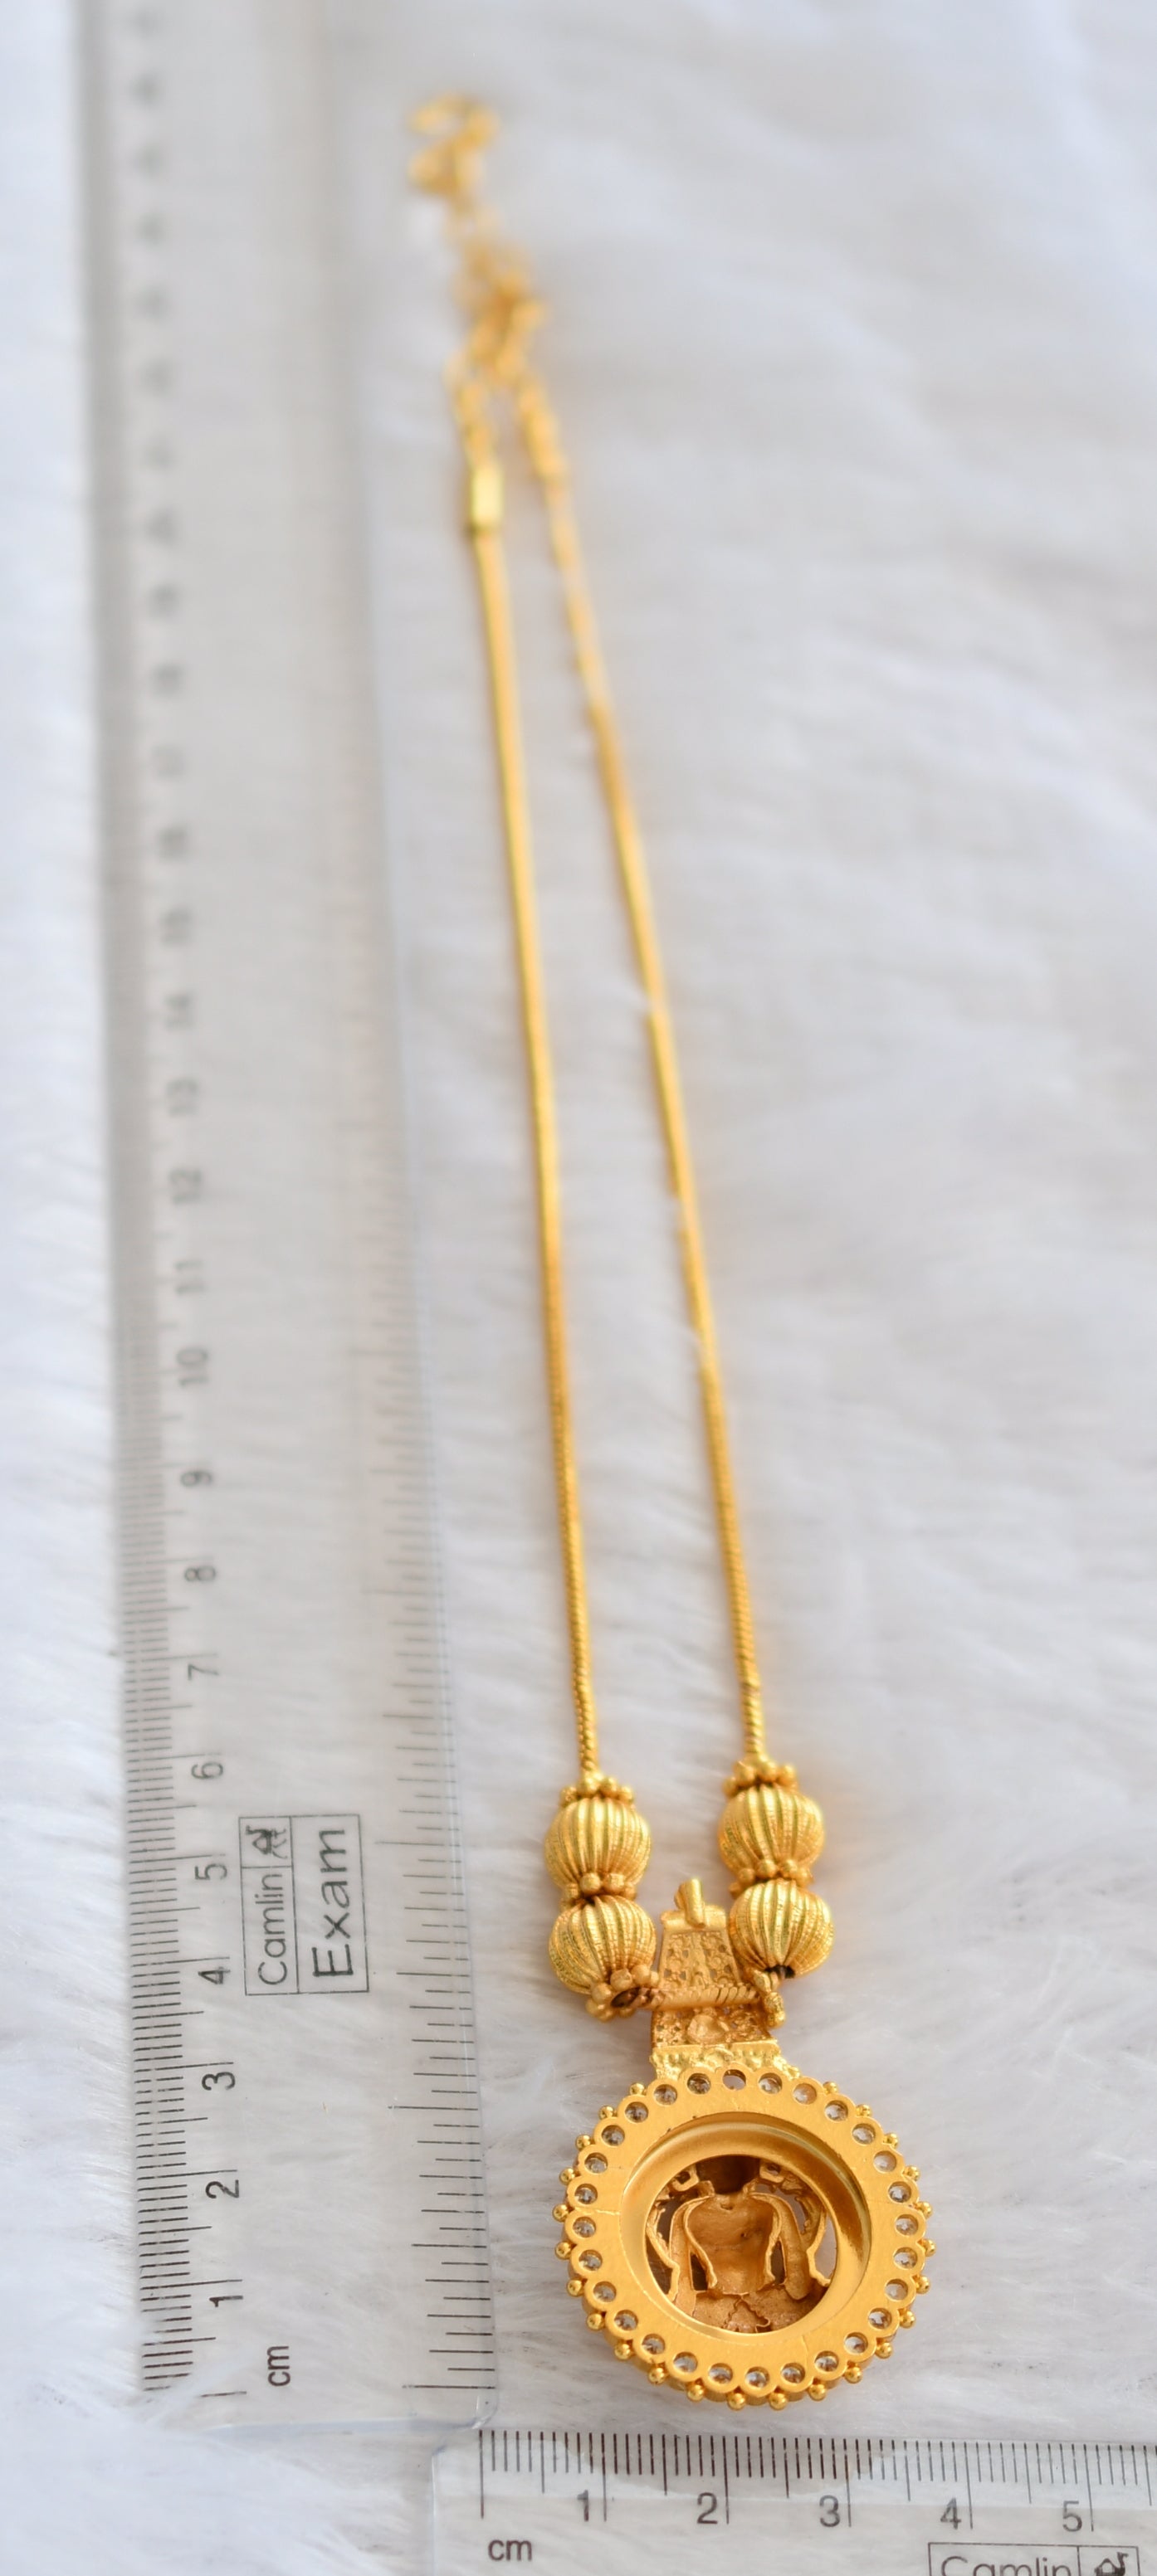 Gold tone cz white kerala style lakshmi kodi necklace dj-46348